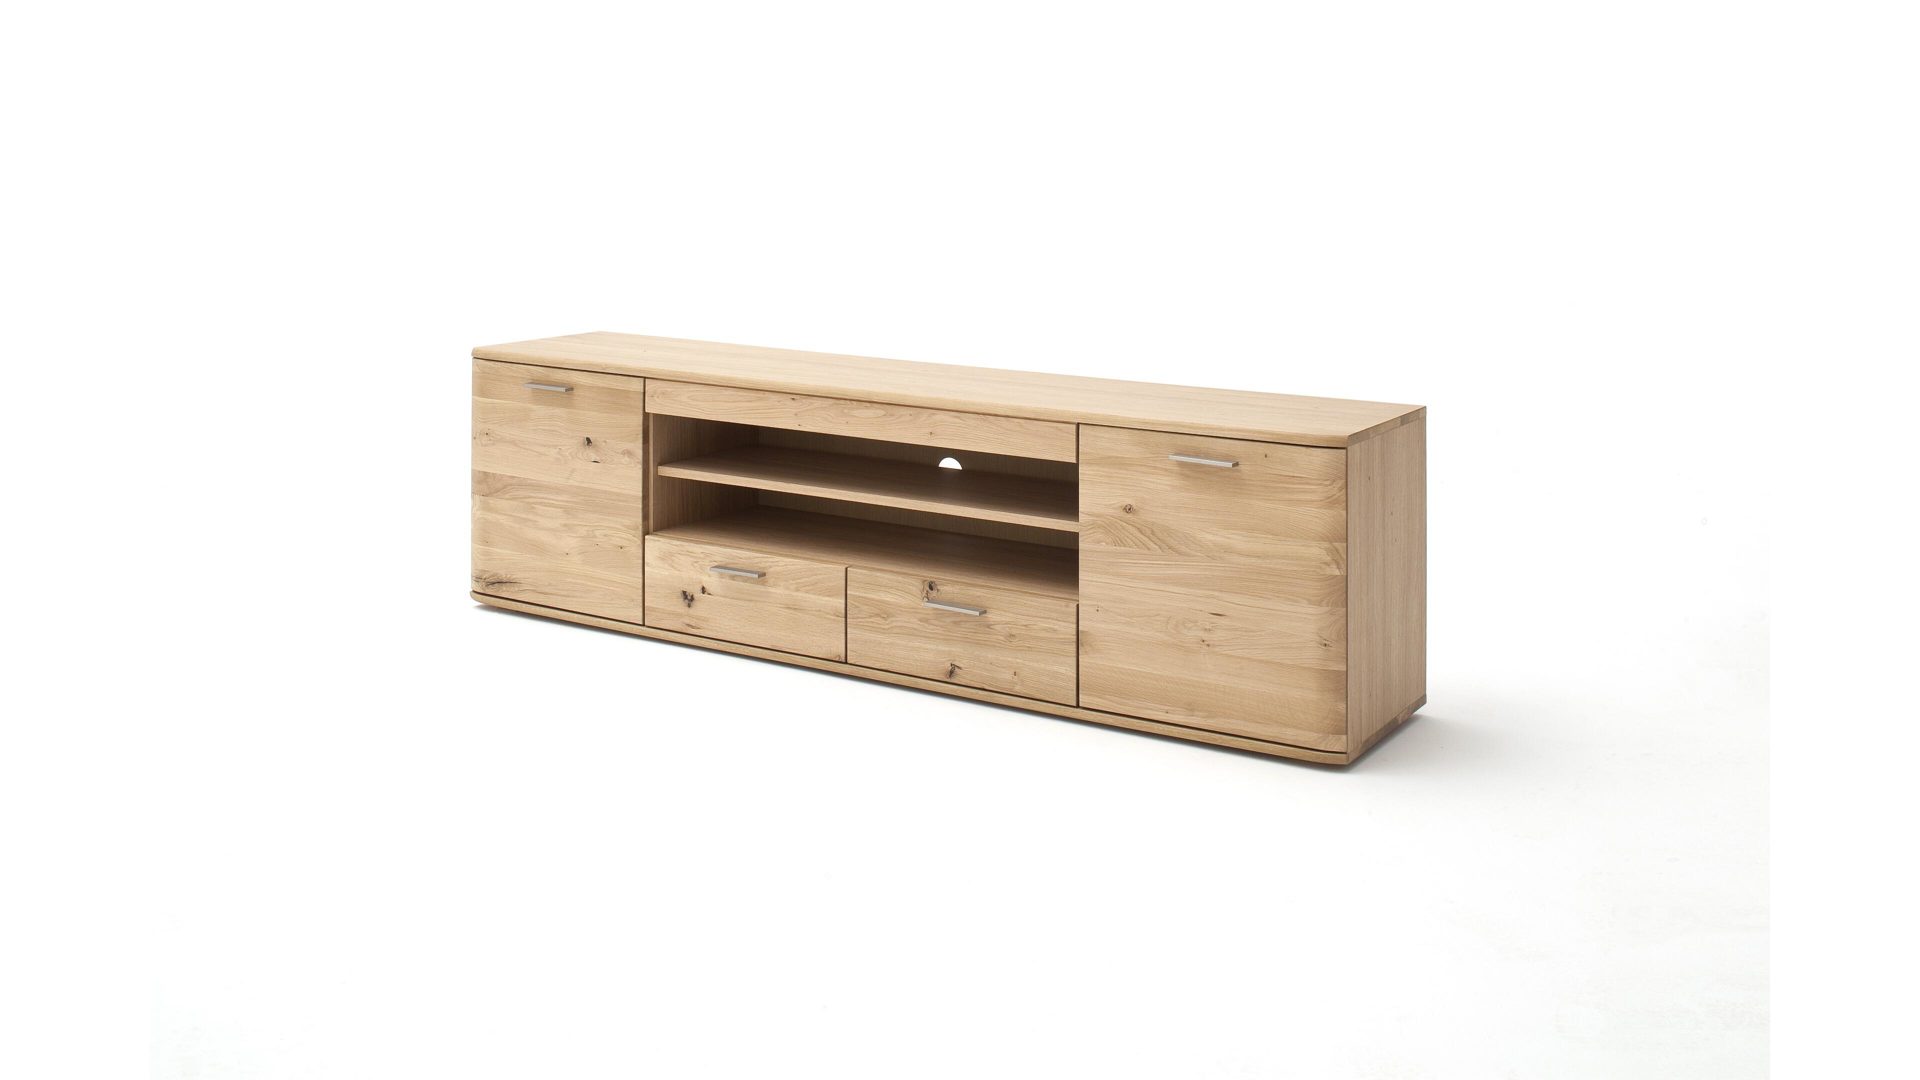 Lowboard Mca furniture aus Holz in Holzfarben Lowboard biancofarbene Balkeneiche – zwei Türen, zwei Schubladen, zwei offene Fächer